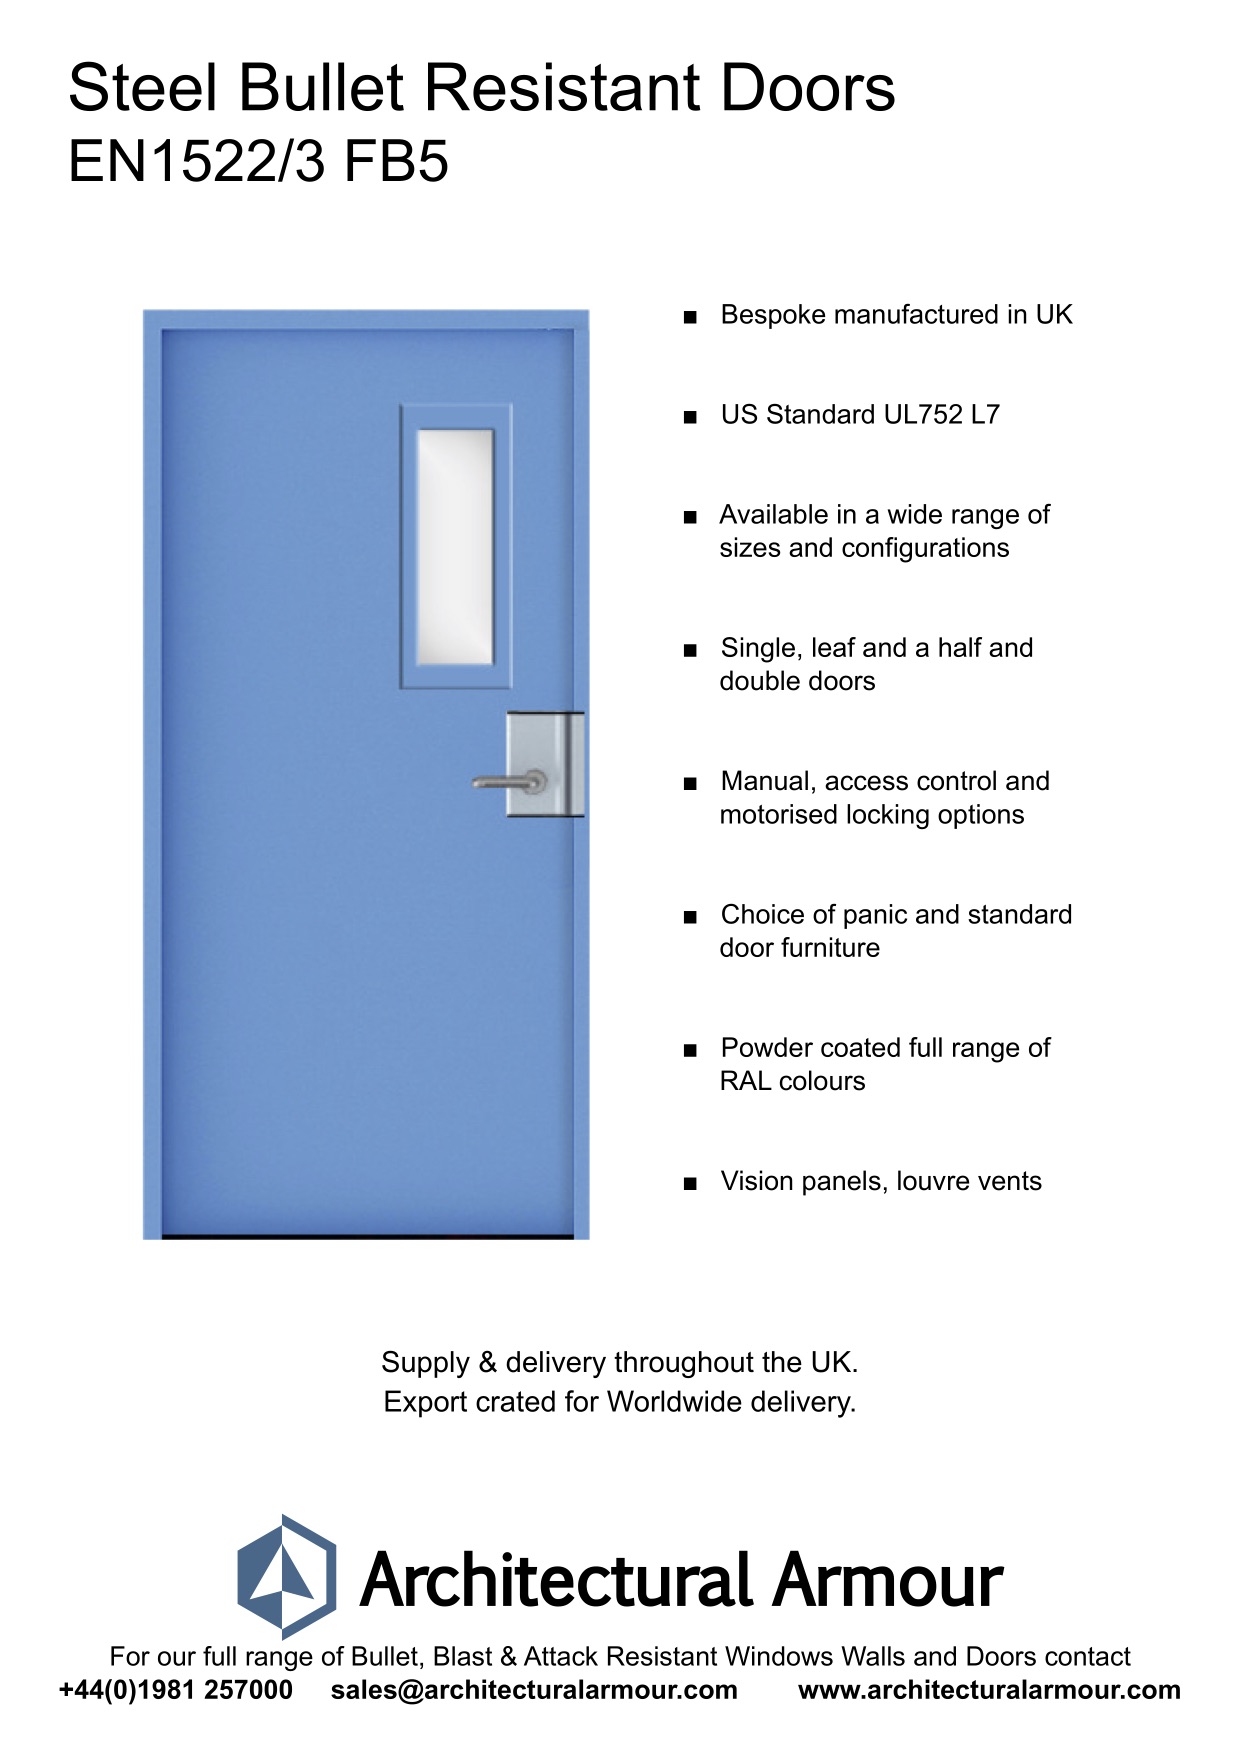 EN1522-3-FB5-Single-Slim-Vision-Panel-Bullet-Resistant-Steel-Door